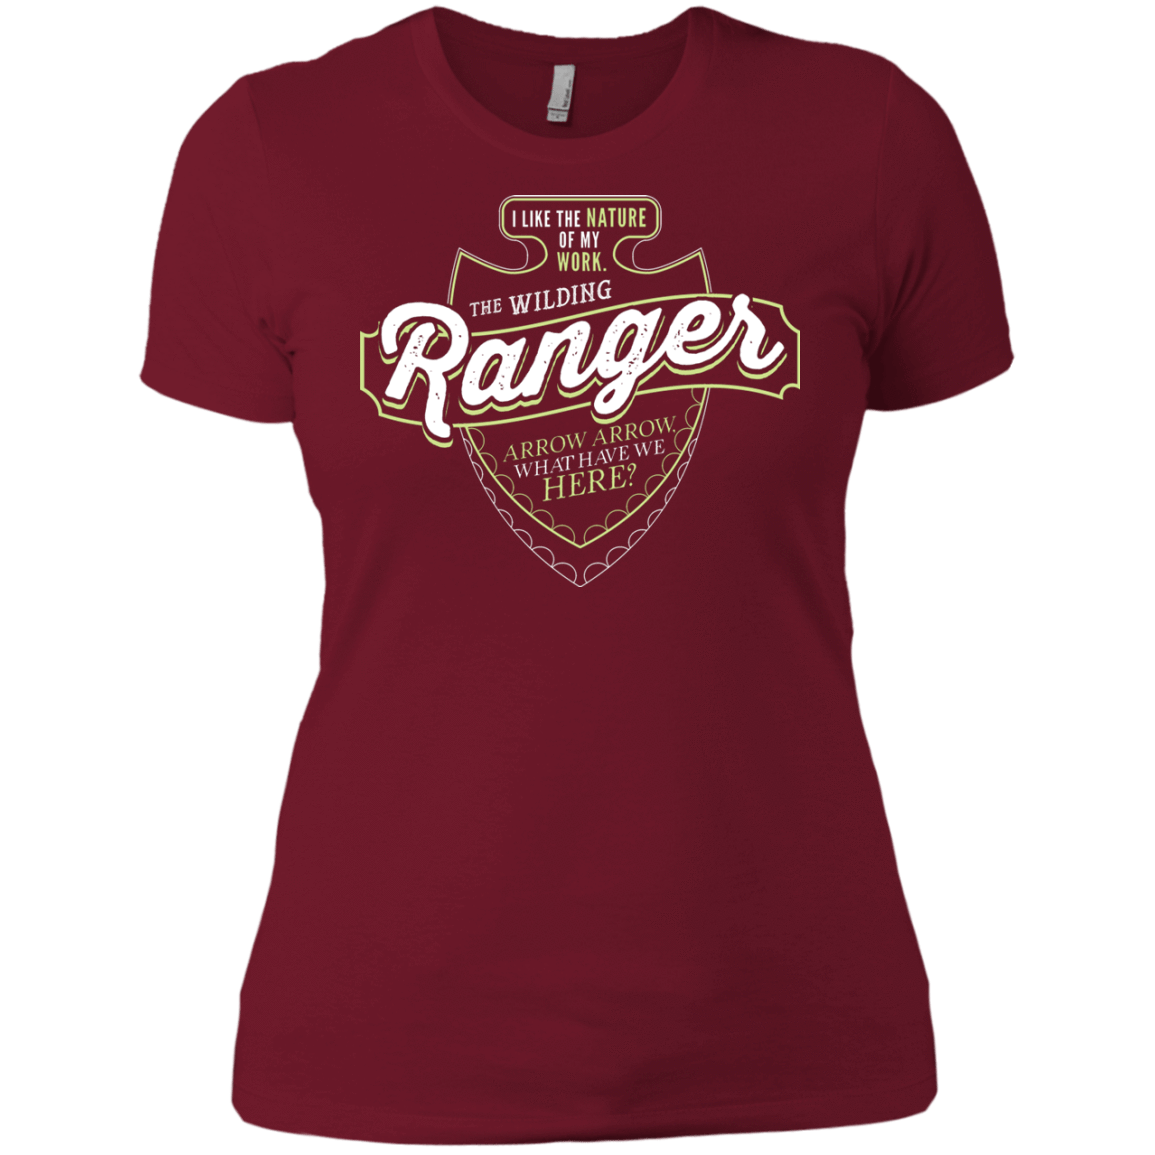 t shirt ranger